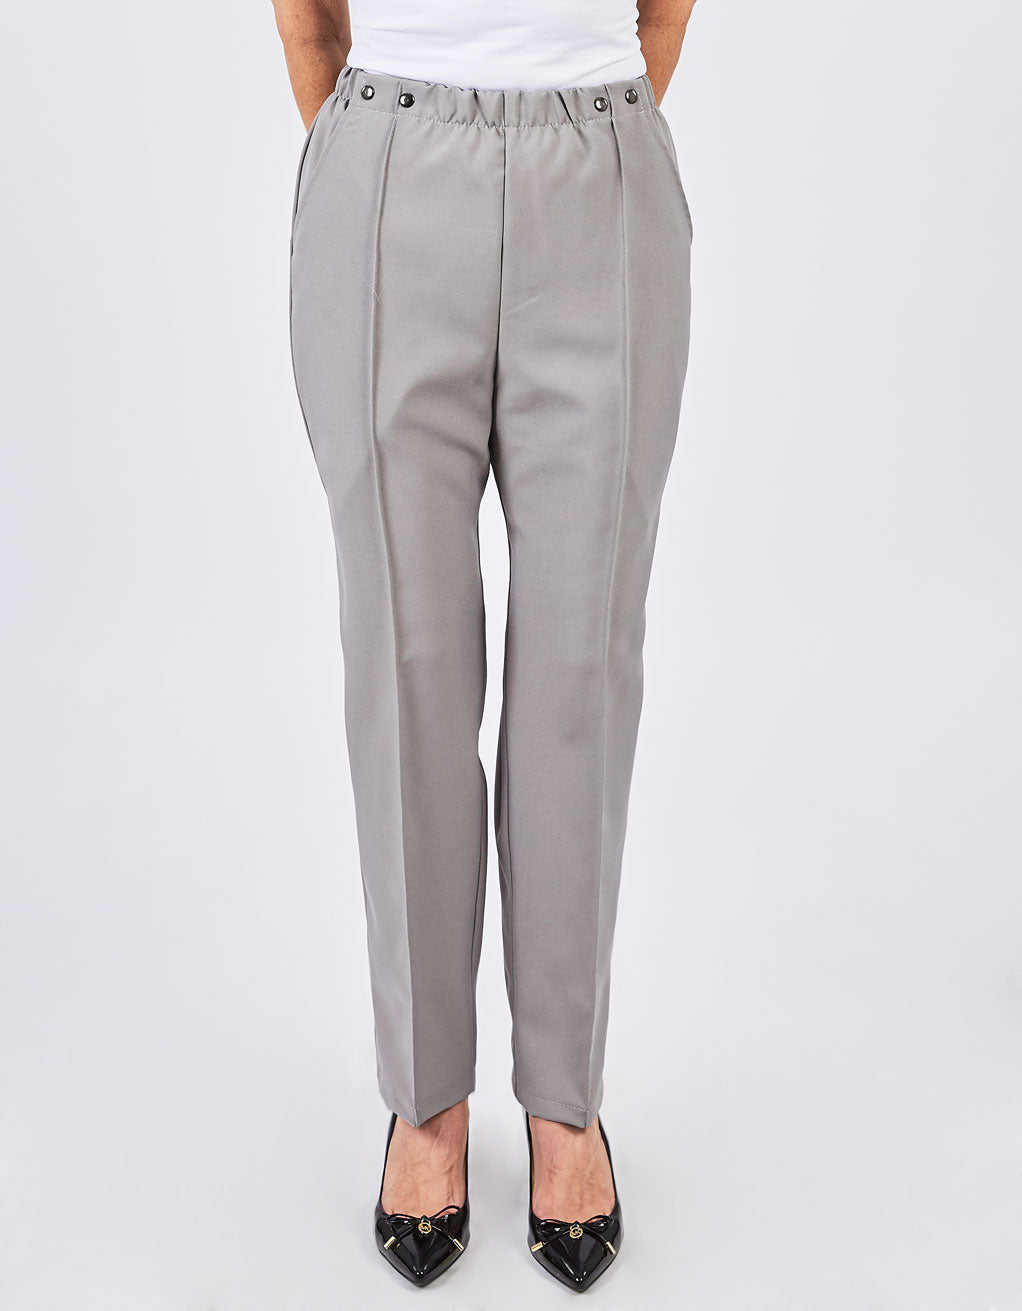 Pantalon gris perle adaptés, pour dame | FP62525 | EZ